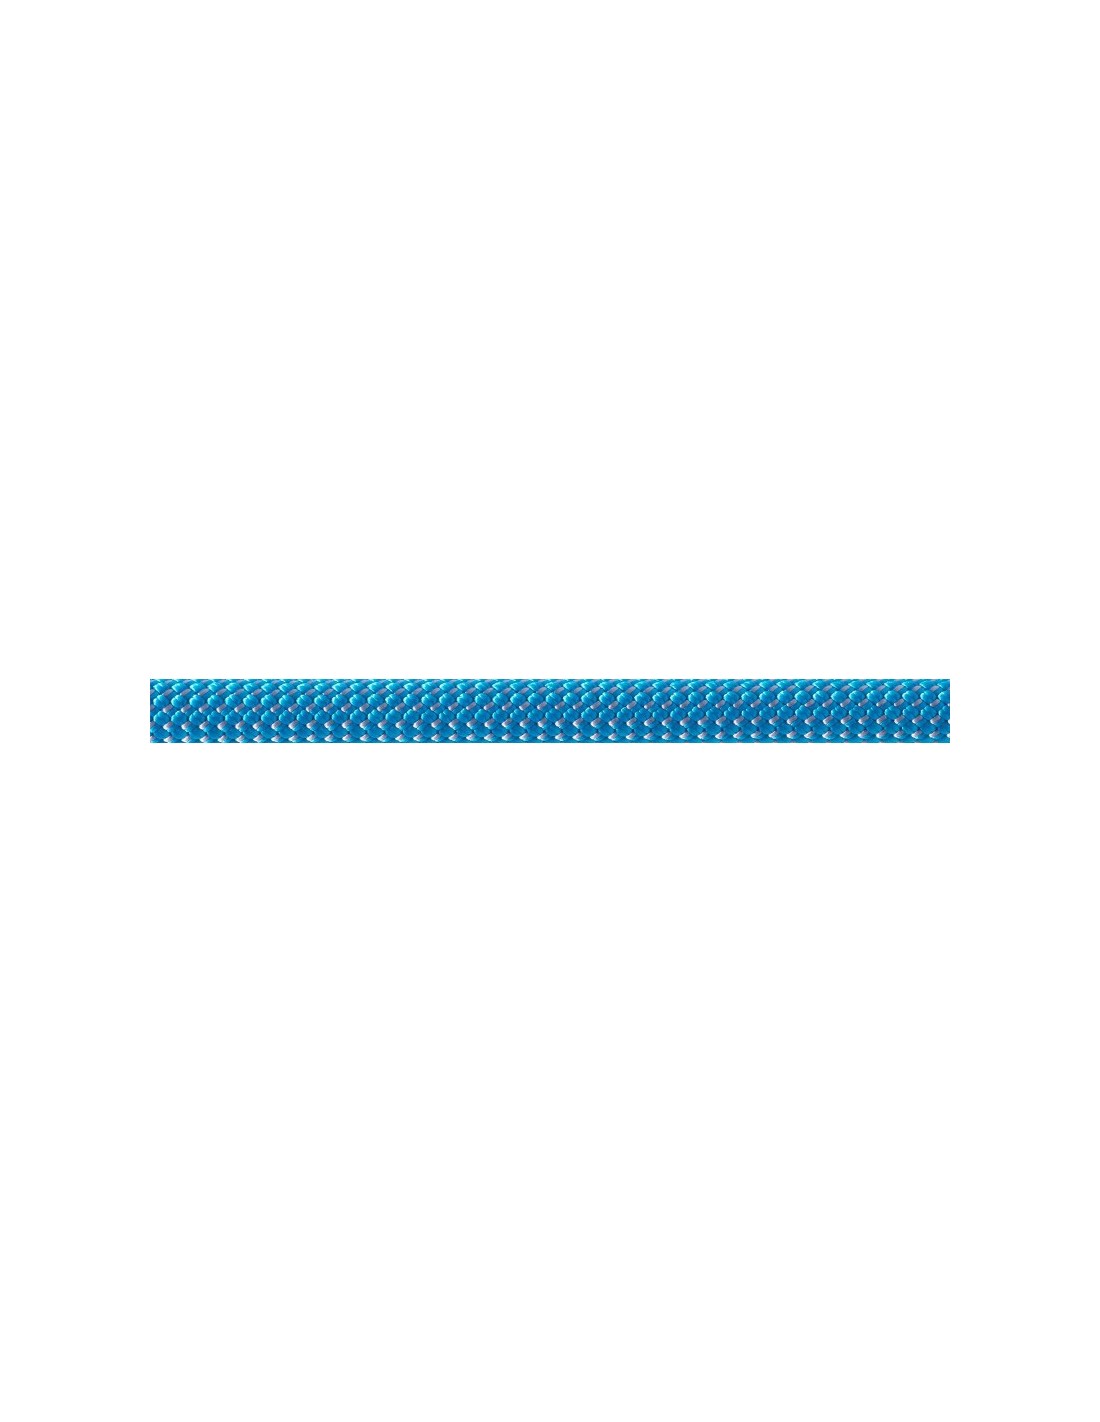 Beal Kletterseil 9,1mm Joker Unicore Dry Cover, blau, 70 Meter Seildurchmesser - 9.1 - 9.5 mm, Seilvariante - Einfachseil, Seilfarbe - Blau, Seillänge - 70 m, von Beal